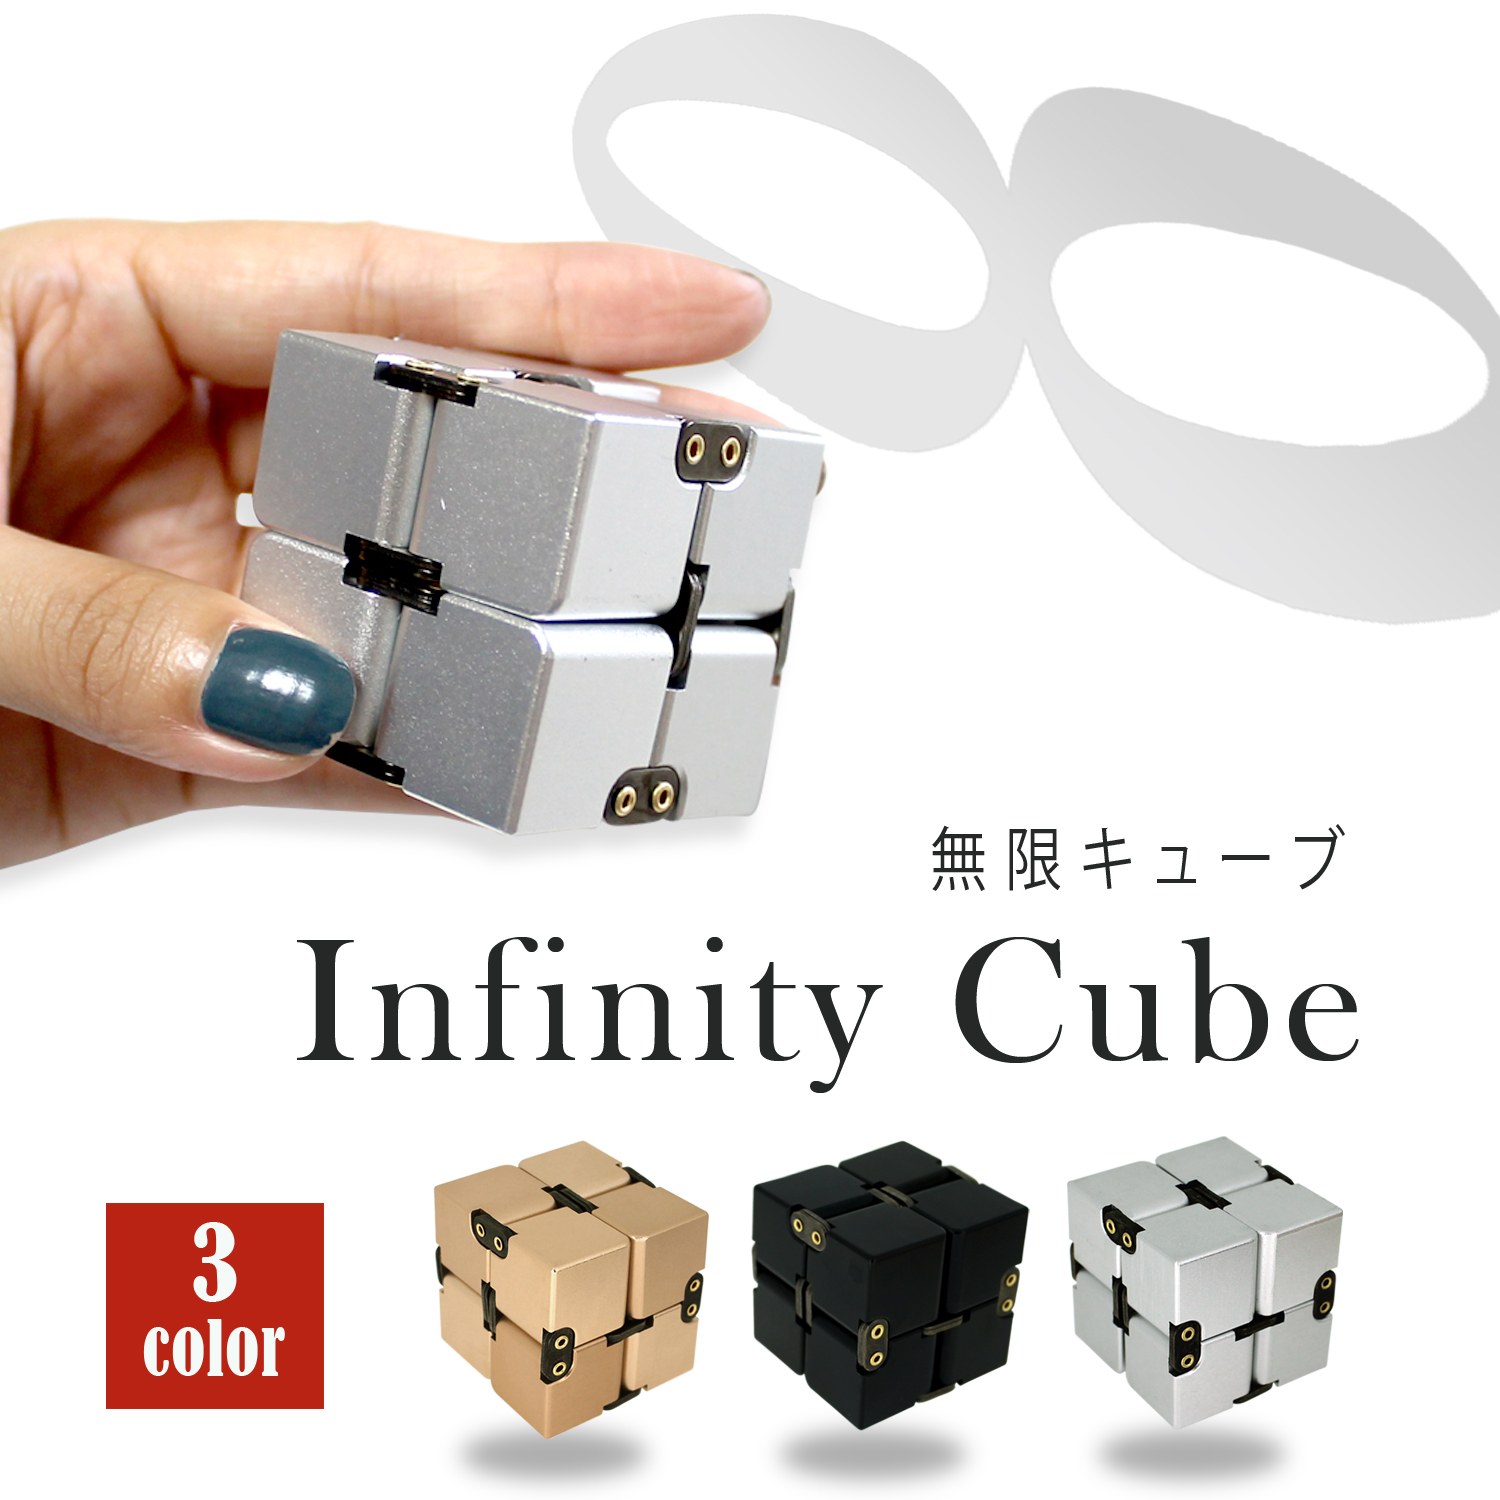 送料無料 Infinity Cube 無限キューブ ストレス解消 話題 無限 回転 シンプル キューブ おもちゃ アルミボディー ホワイトナッツ